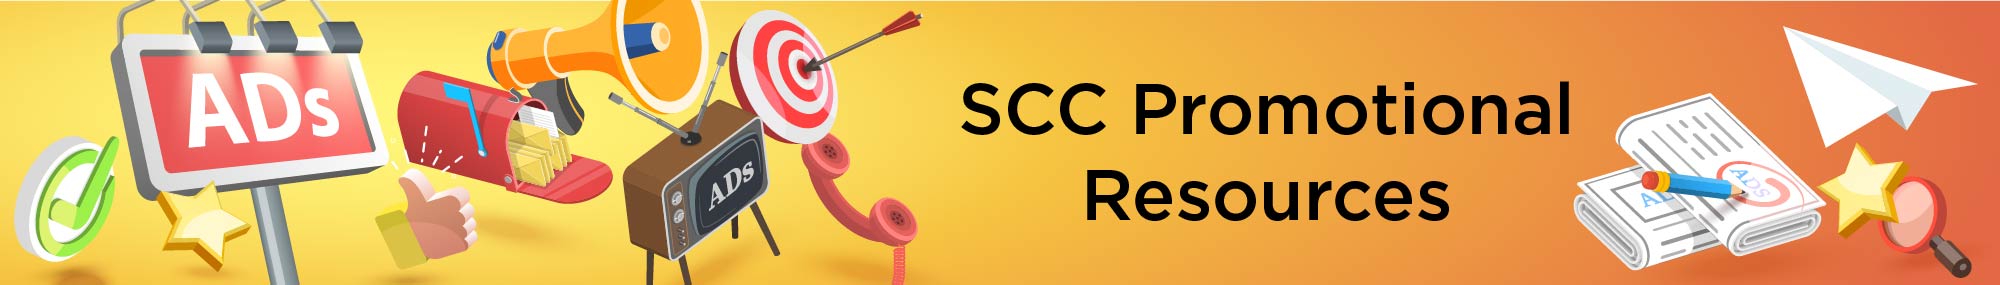 SCC Promotional Resources Image Header